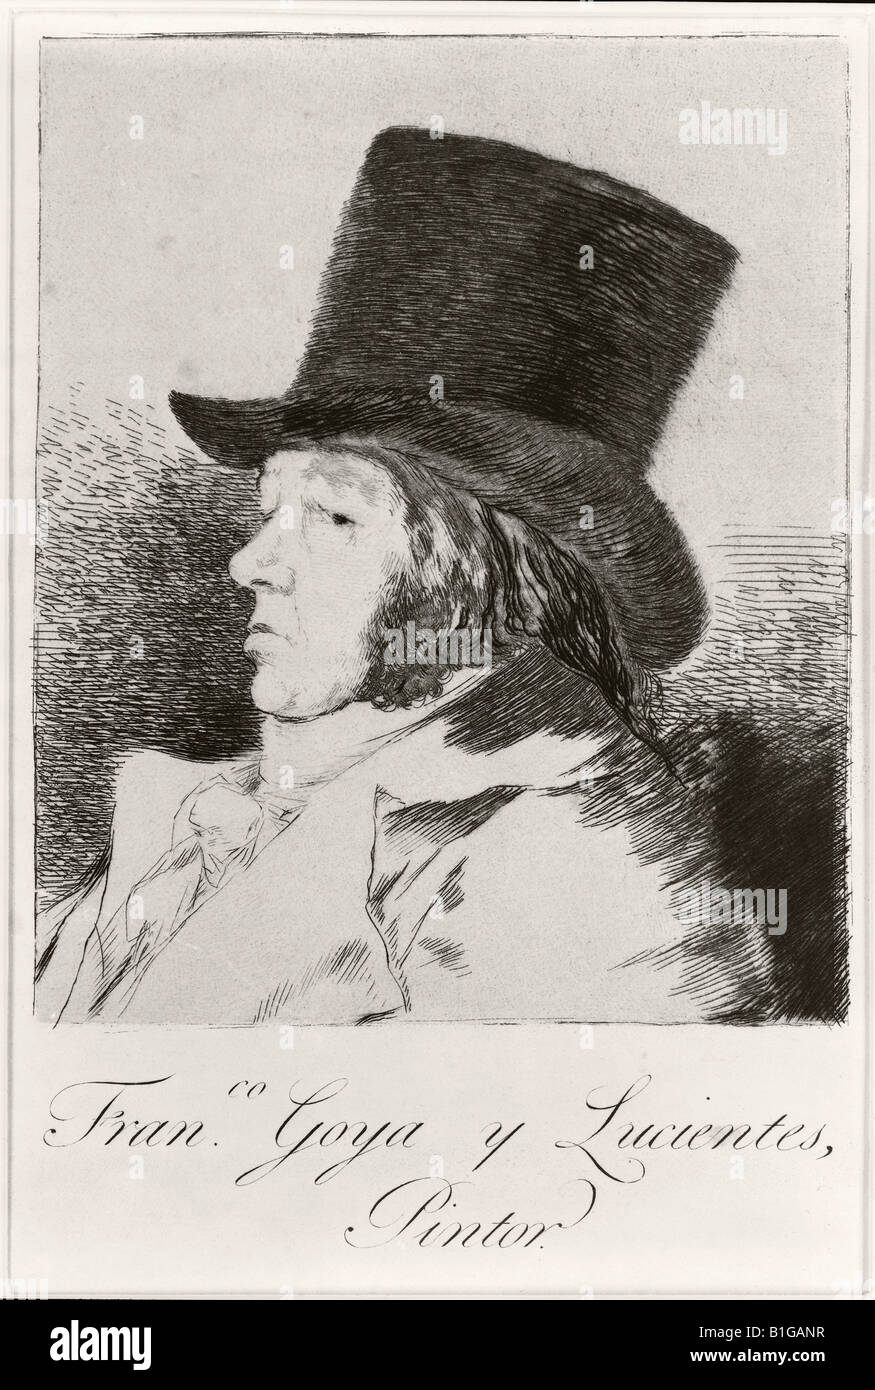 Francisco José de Goya y Lucientes, 1746 - 1828. Pintor y grabador español. Autorretrato. Foto de stock